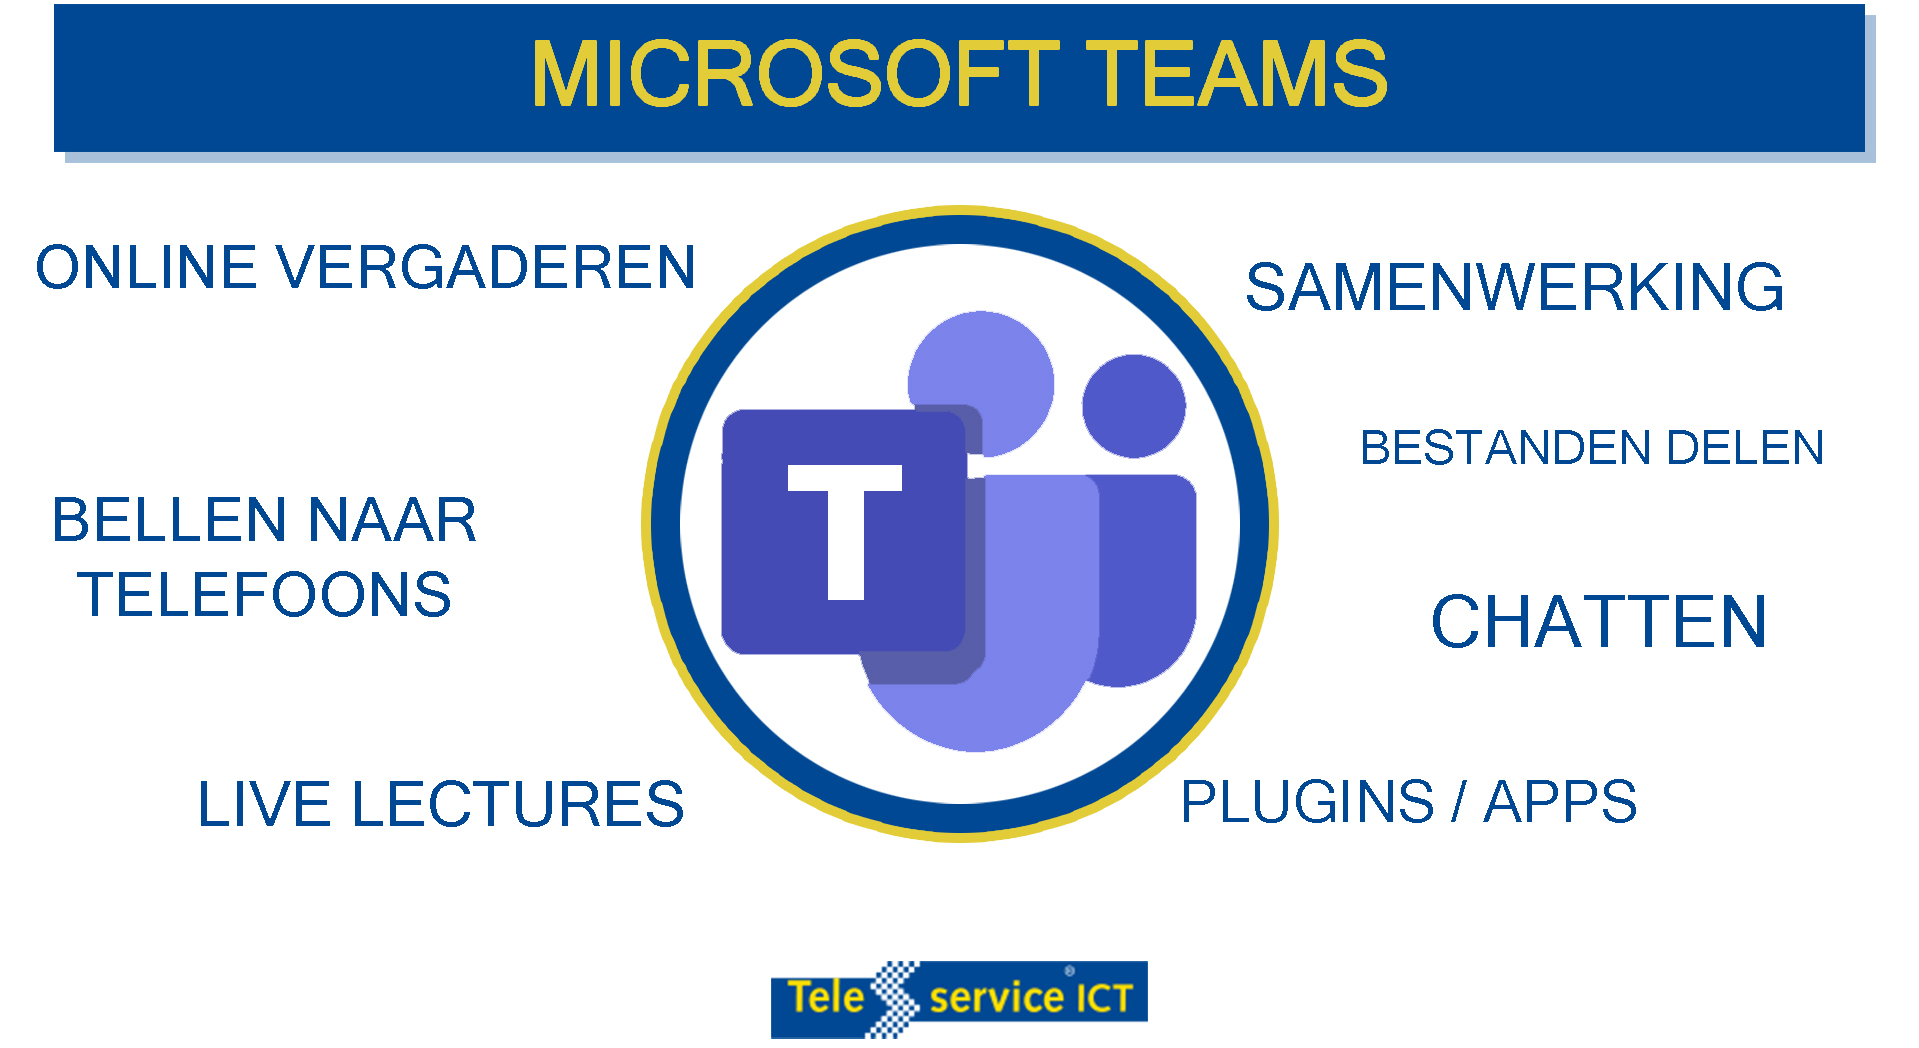 Microsoft Teams biedt allerlei Features, waar te beginnen?